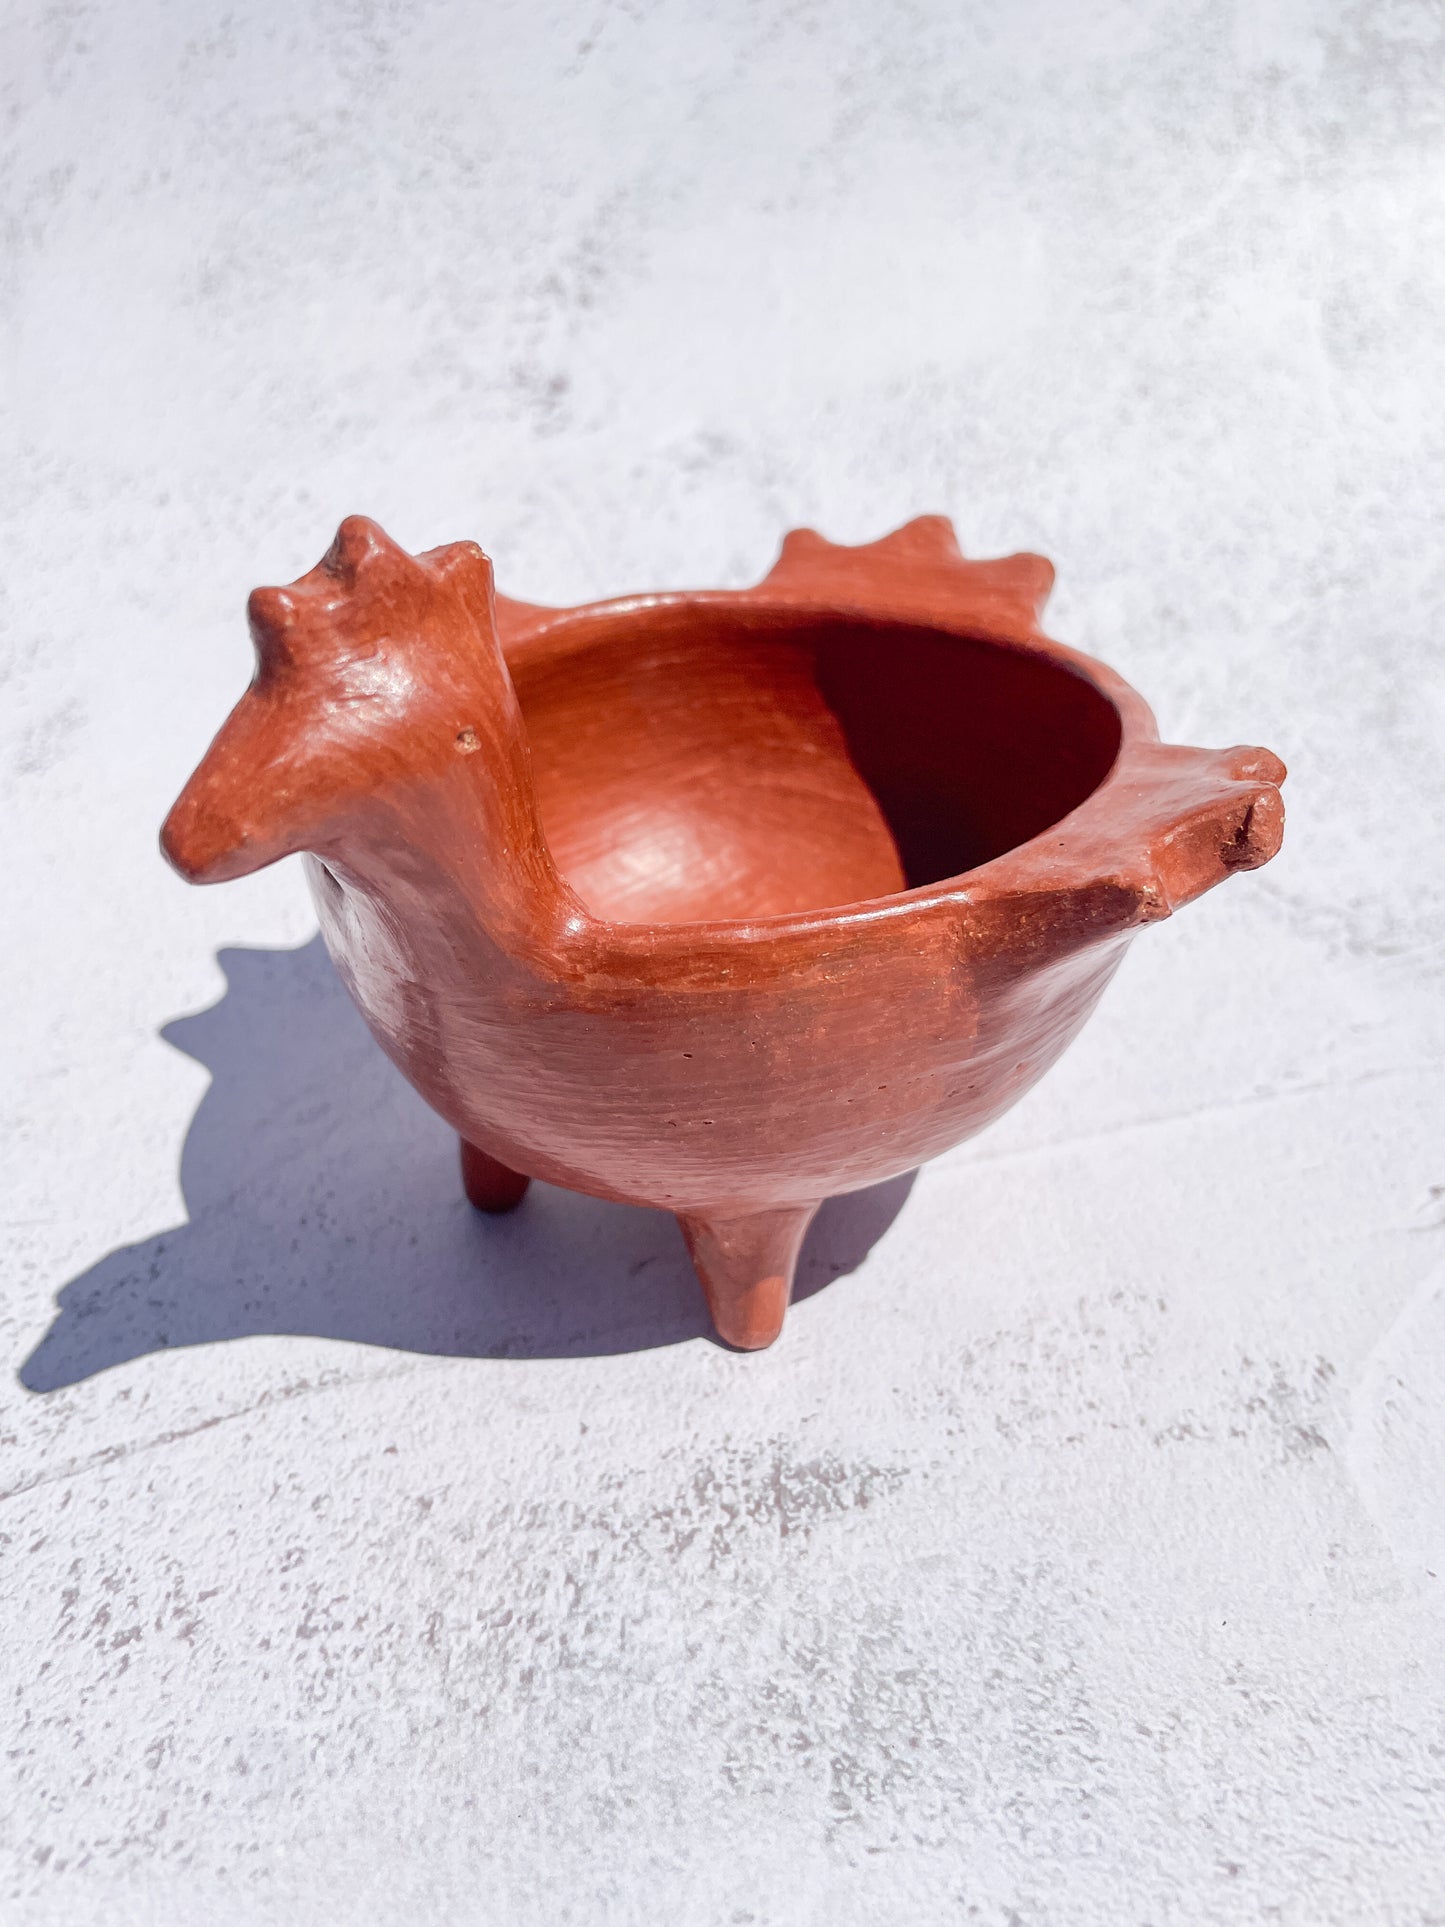 Oaxaca Red Clay Pottery Oaxaca Pottery Duck Bowl Handmade Red Pottery Salsera de Pato